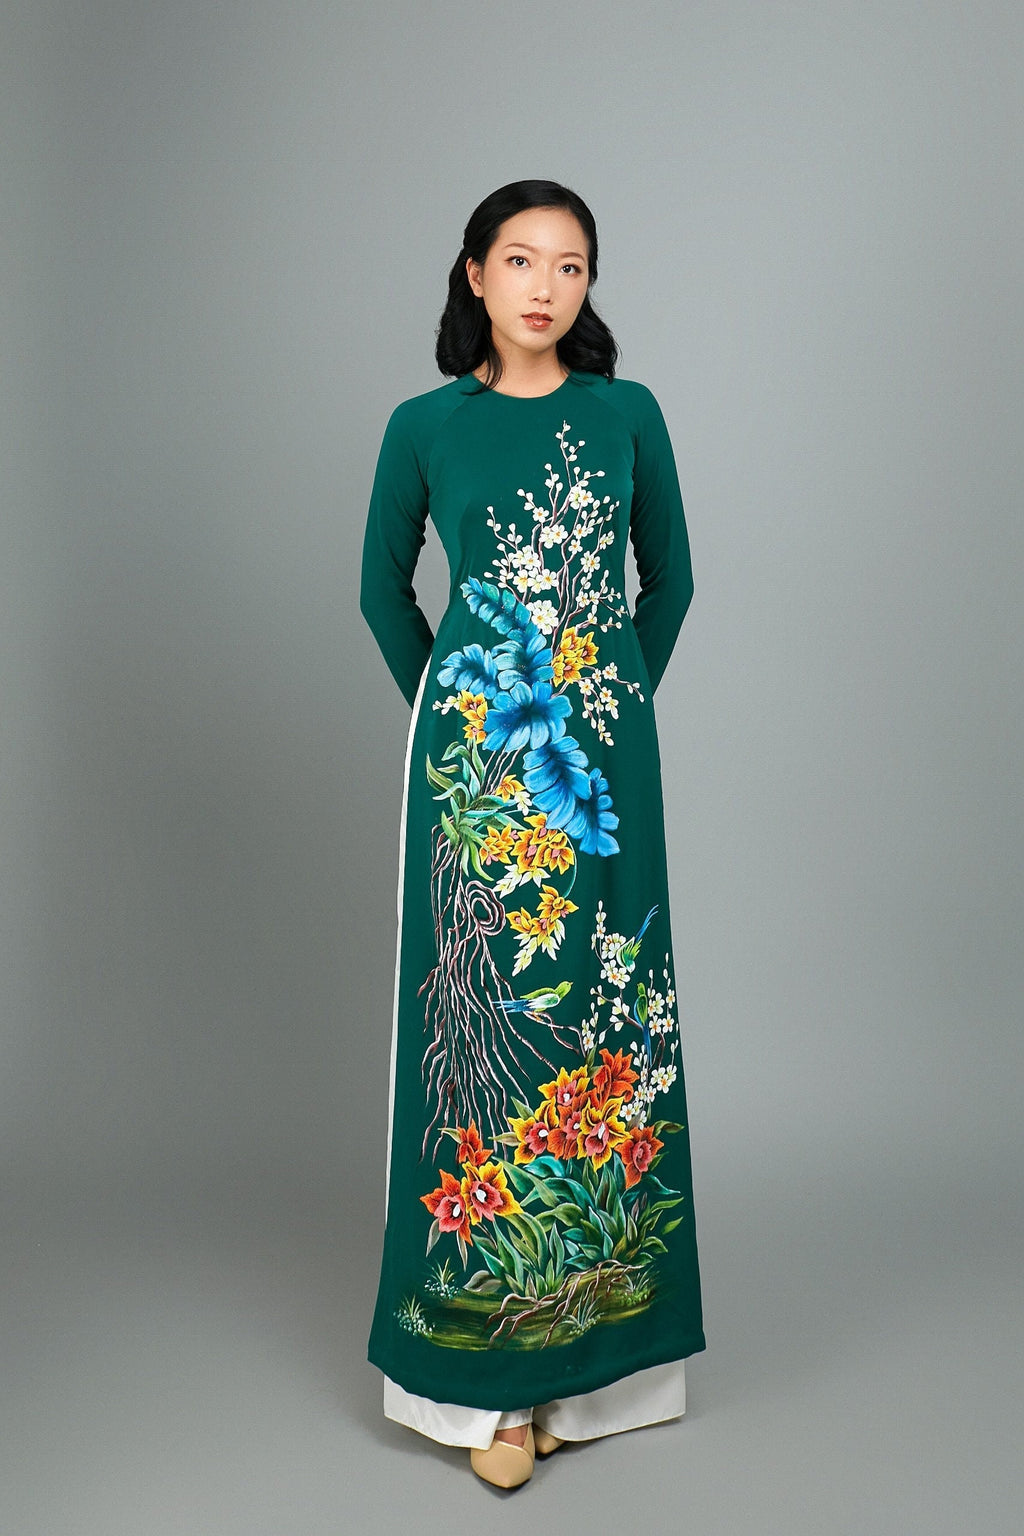 Hoa sen lên áo dài là điểm nhấn thú vị cho bộ trang phục truyền thống. Hãy xem hình để chiêm ngưỡng sự đẹp độc đáo của người mặc và sự tinh tế của nhà thiết kế trong việc khắc họa hoa sen trên áo dài.